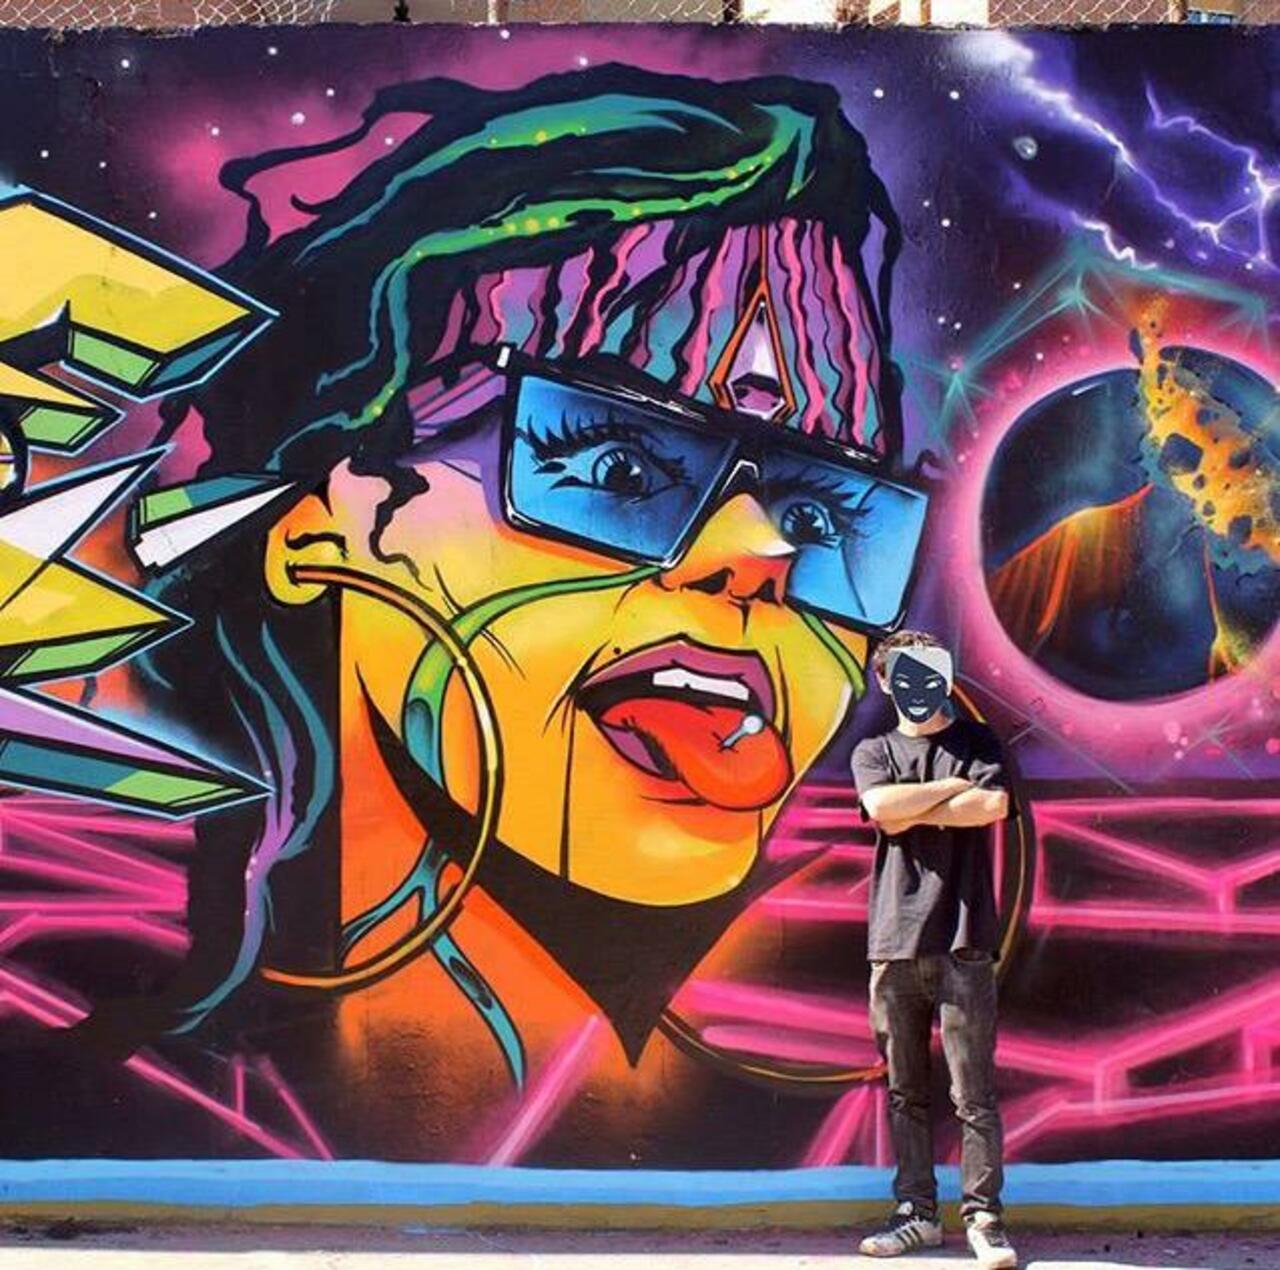 RT @pivotask: Brilliant new Street Art by the artist Jaycaes

#art #graffiti #mural #streetart http://t.co/rhwvDkEffQ